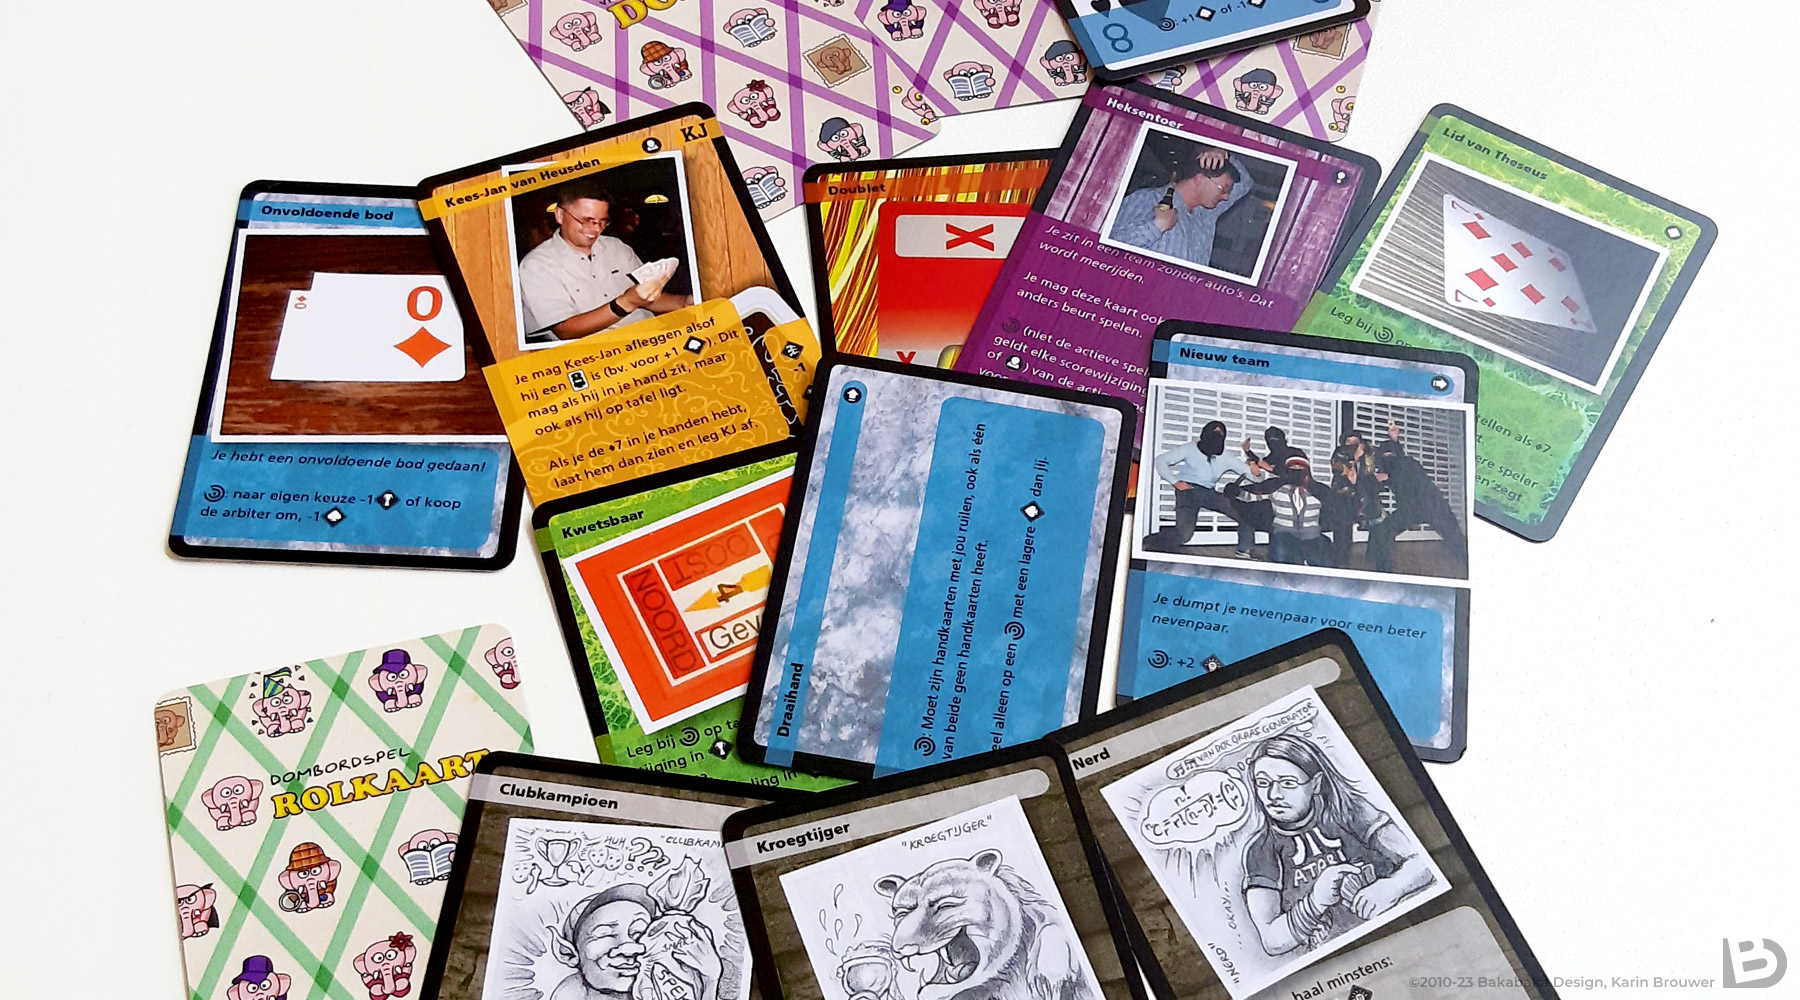 verzameling van een aantal kaarten uit het ontwerp van en kaartspel voor een bridgeclub, uitgespreid op een tafel